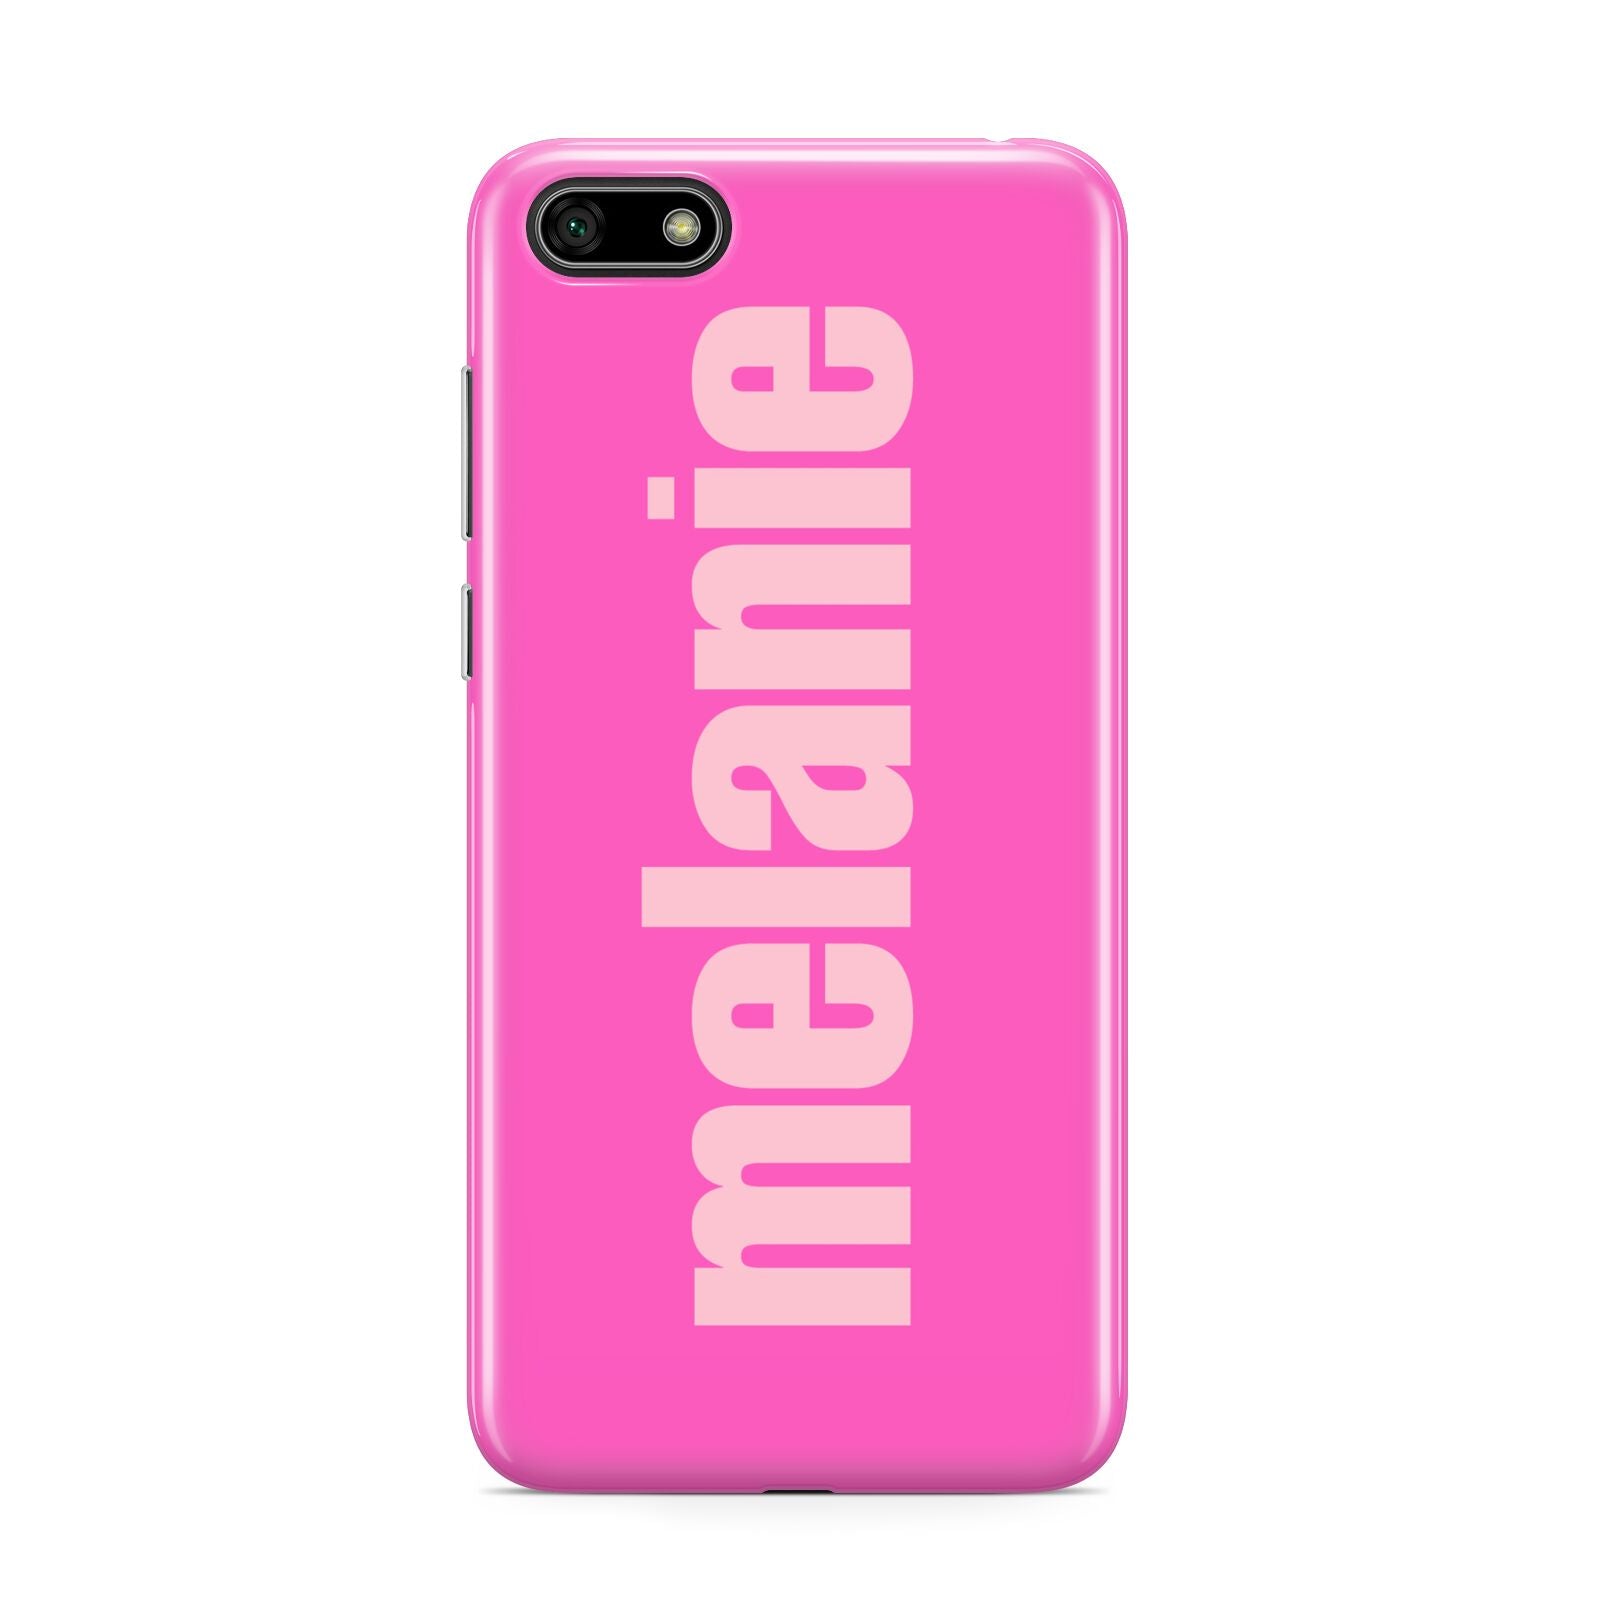 Personalised Pink Huawei Y5 Prime 2018 Phone Case